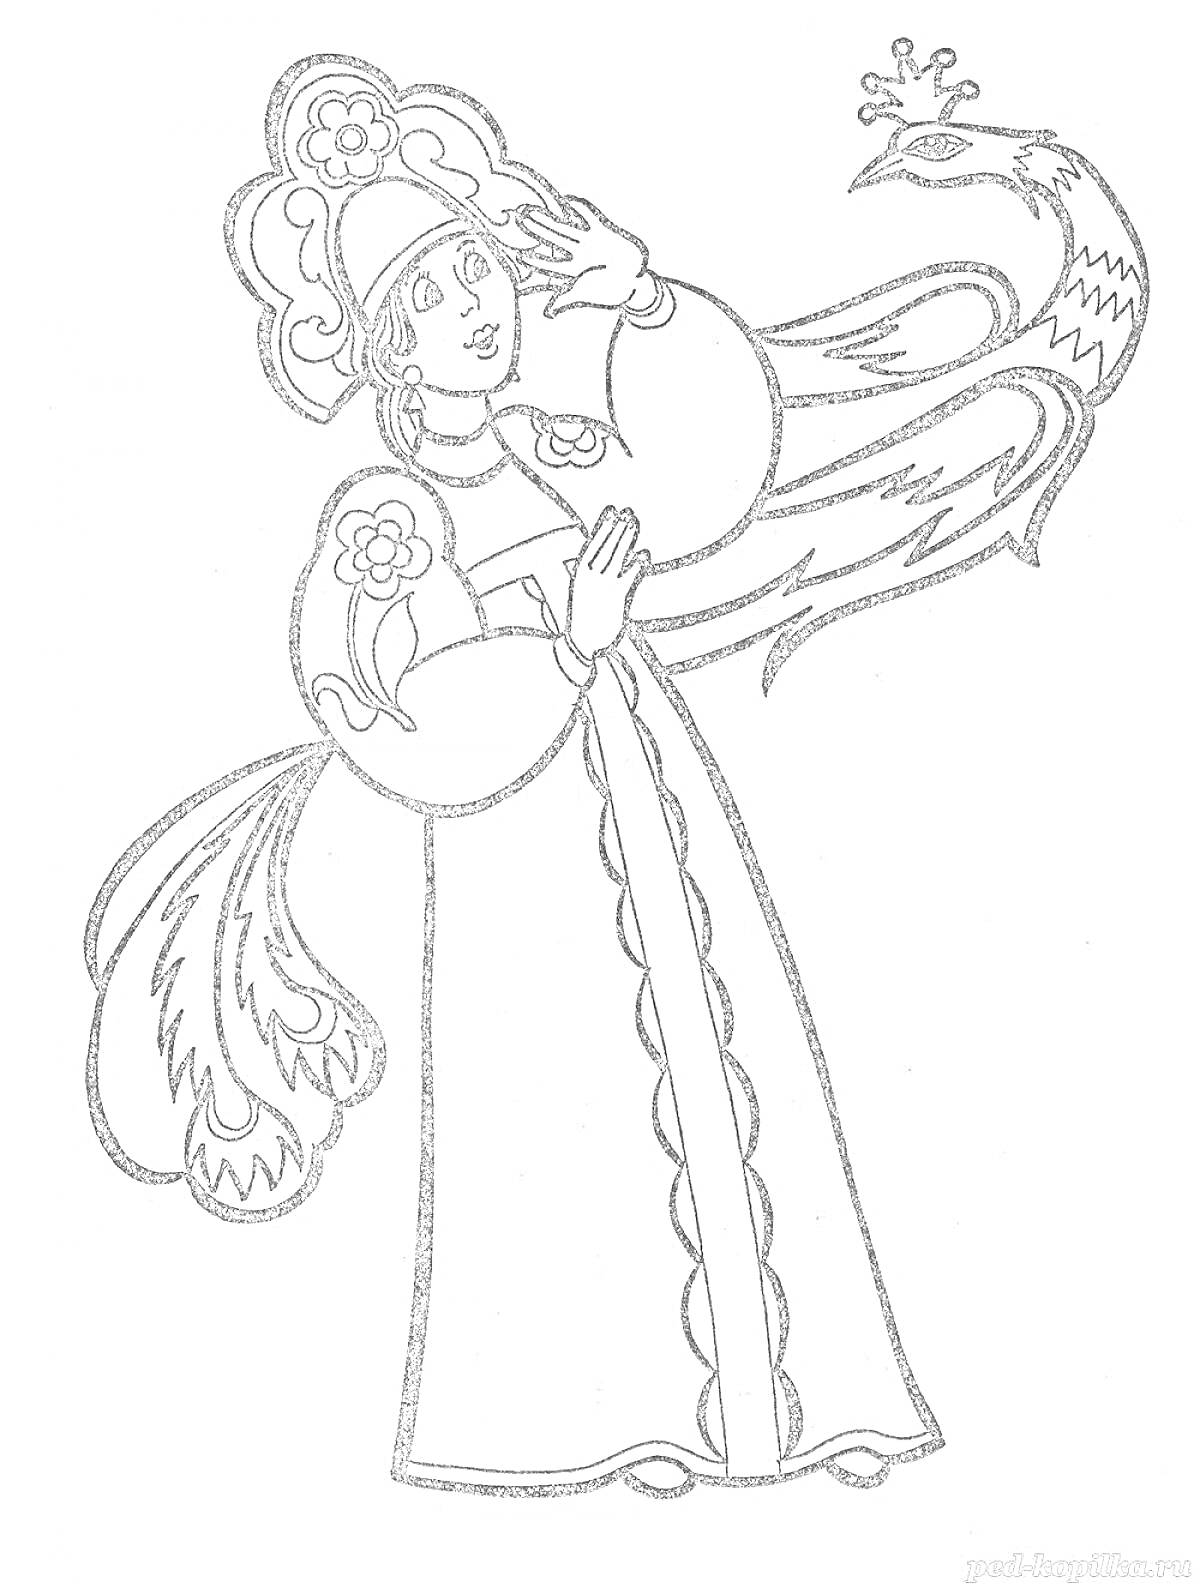 Раскраска Девушка в традиционной русской одежде и Жар-птица с короной на голове